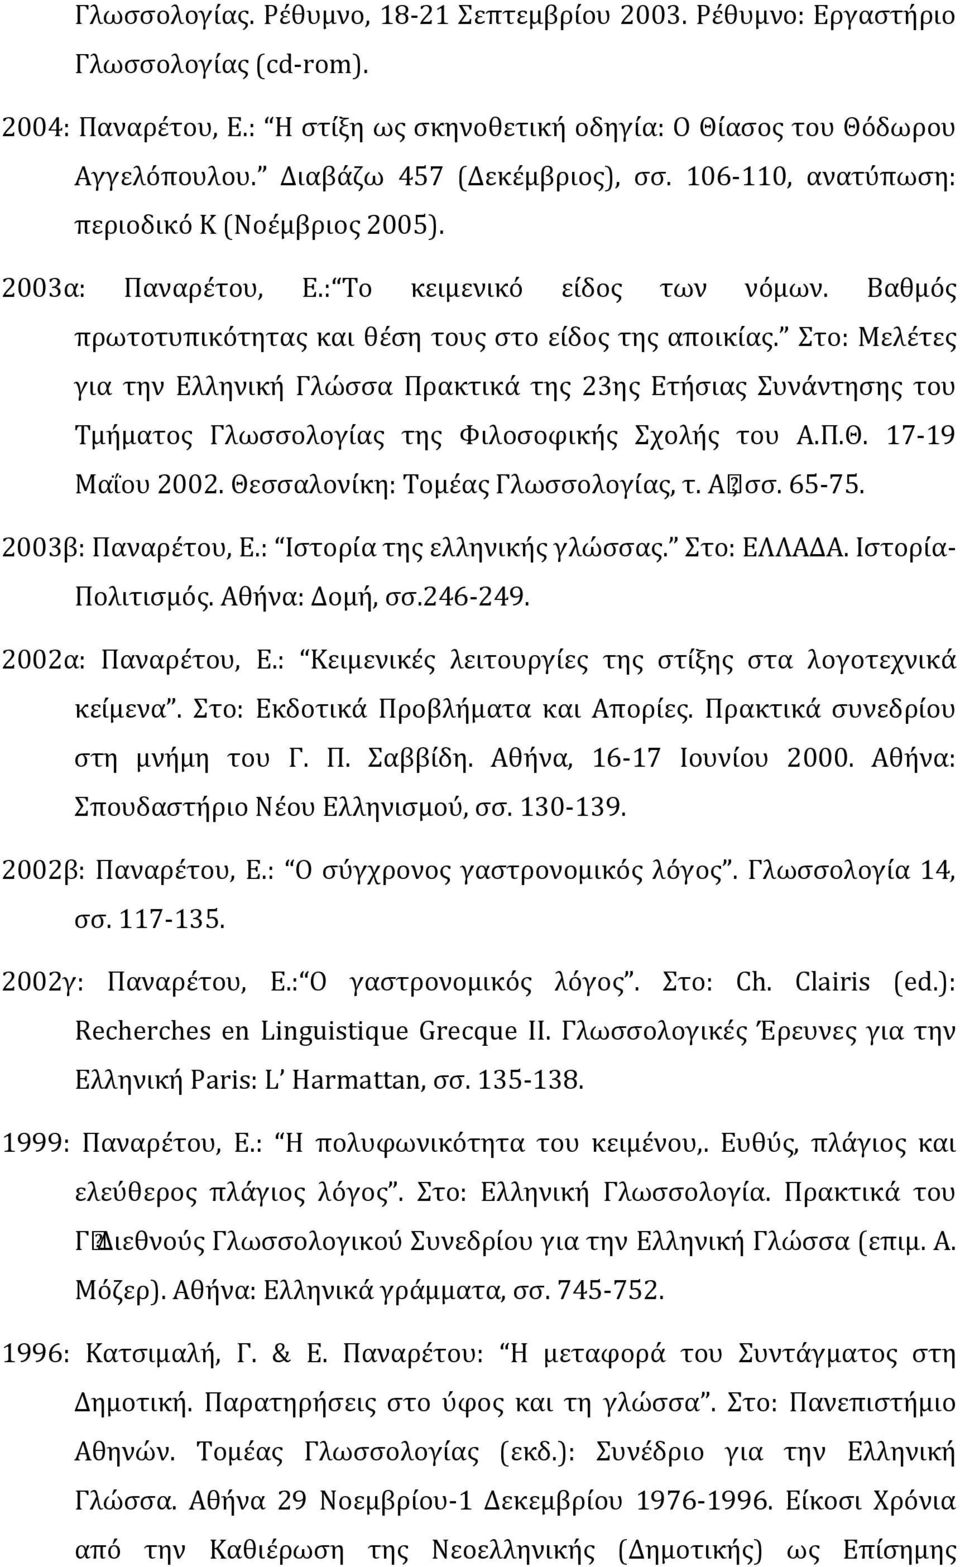 Στο: Μελέτες για την Ελληνική Γλώσσα Πρακτικά της 23ης Ετήσιας Συνάντησης του Τμήματος Γλωσσολογίας της Φιλοσοφικής Σχολής του Α.Π.Θ. 17-19 Μαΐου 2002. Θεσσαλονίκη: Τομέας Γλωσσολογίας, τ. Α, σσ.